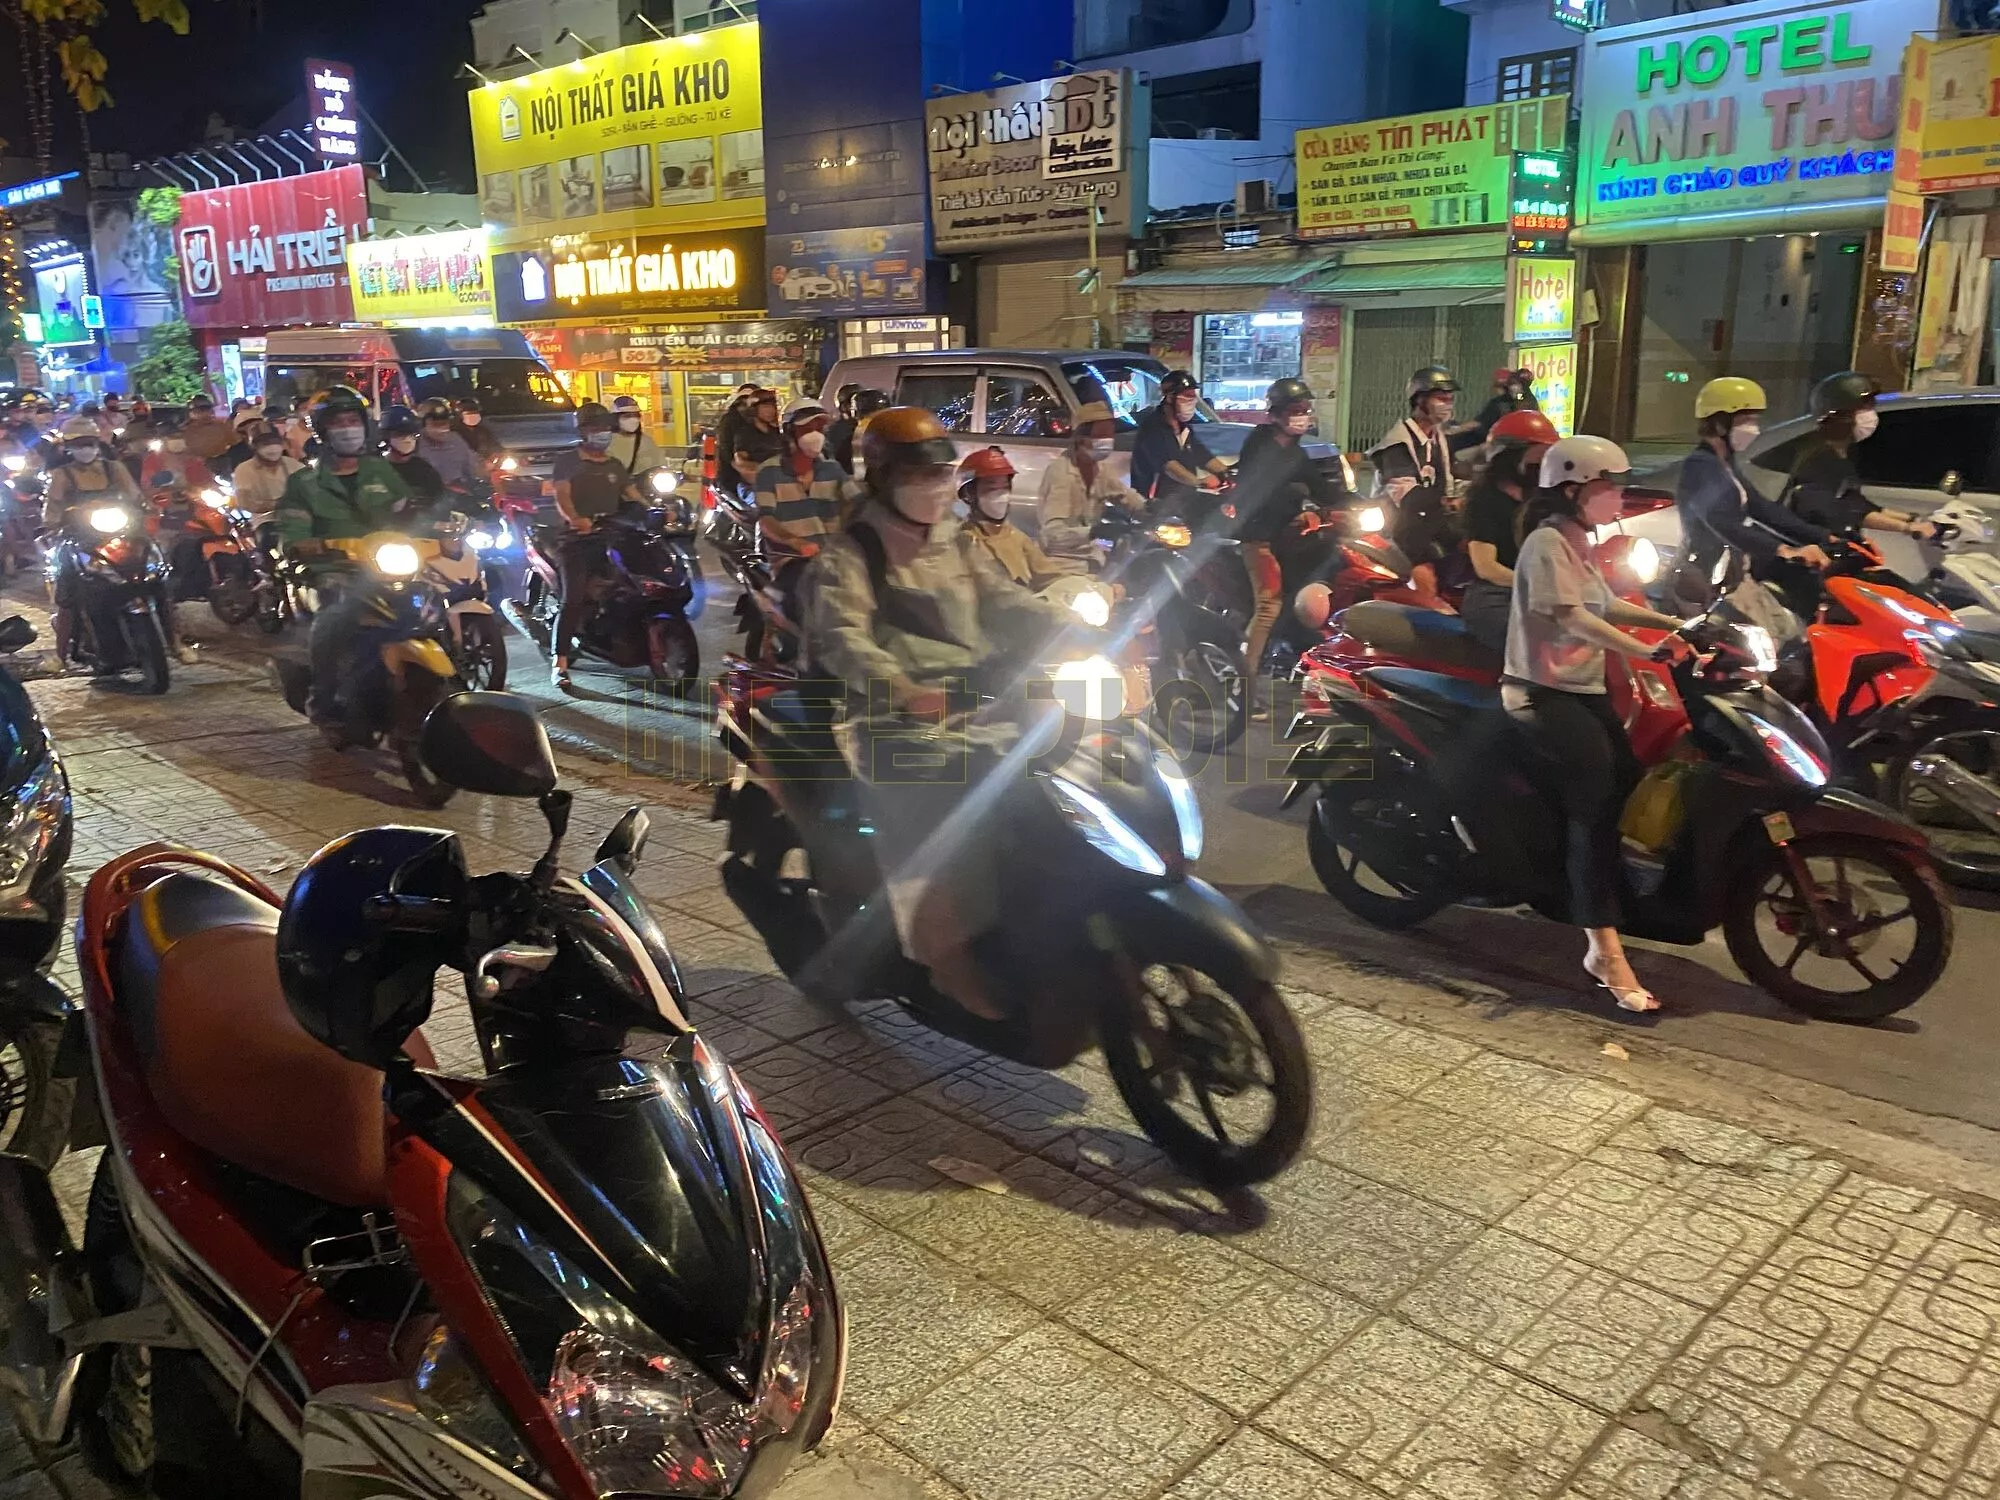 도로를 가득 매운 오토바이들